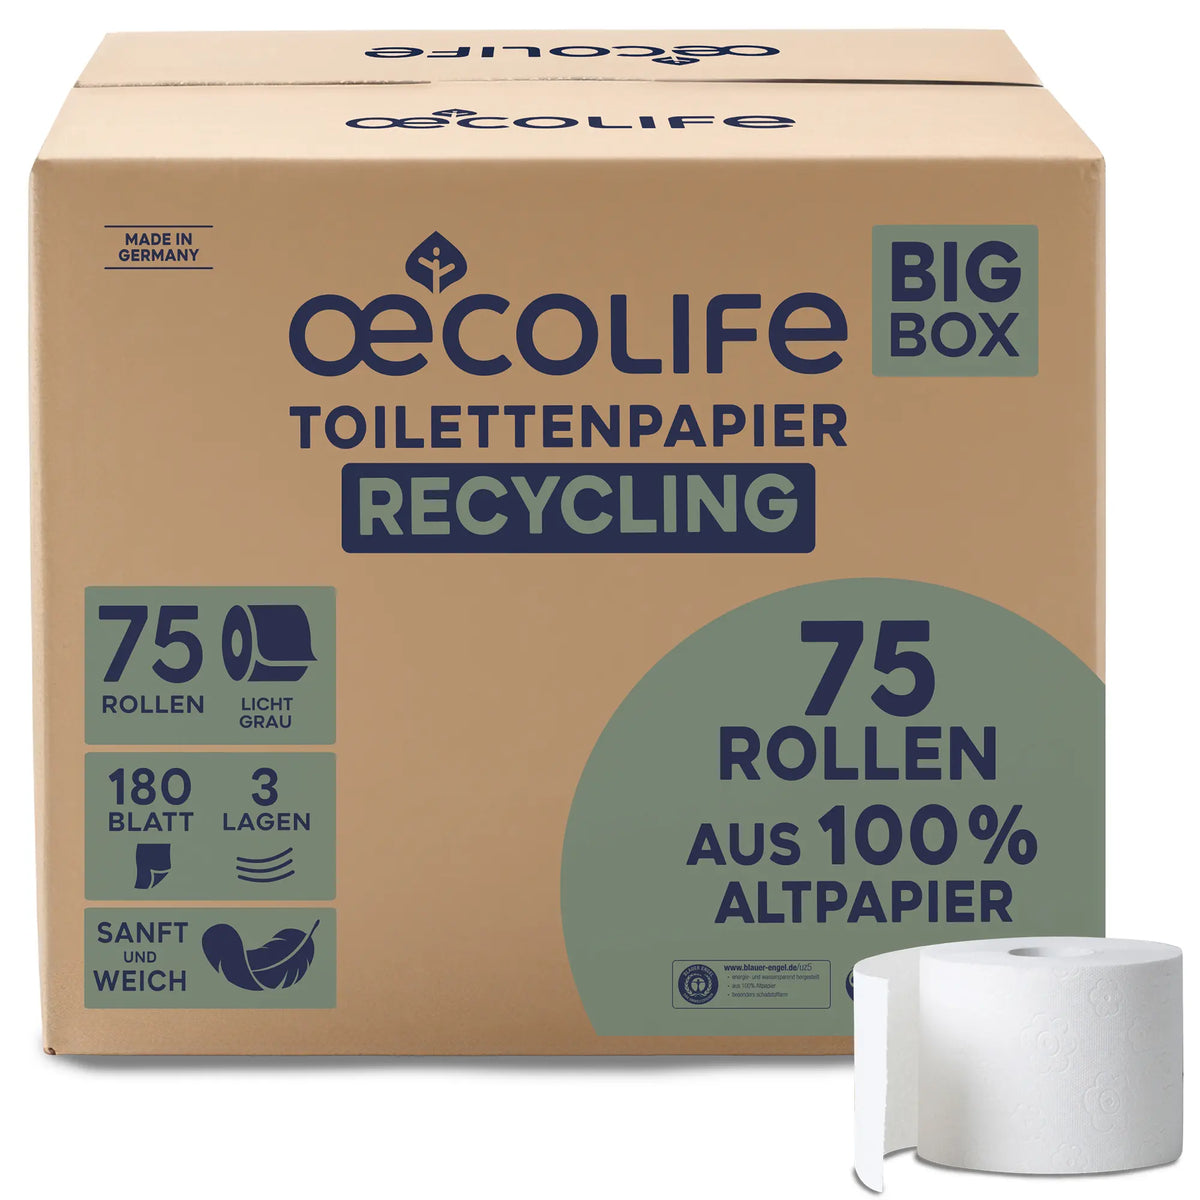 oecolife Toilettenpapier Box Recycling 3lg 75x180BL